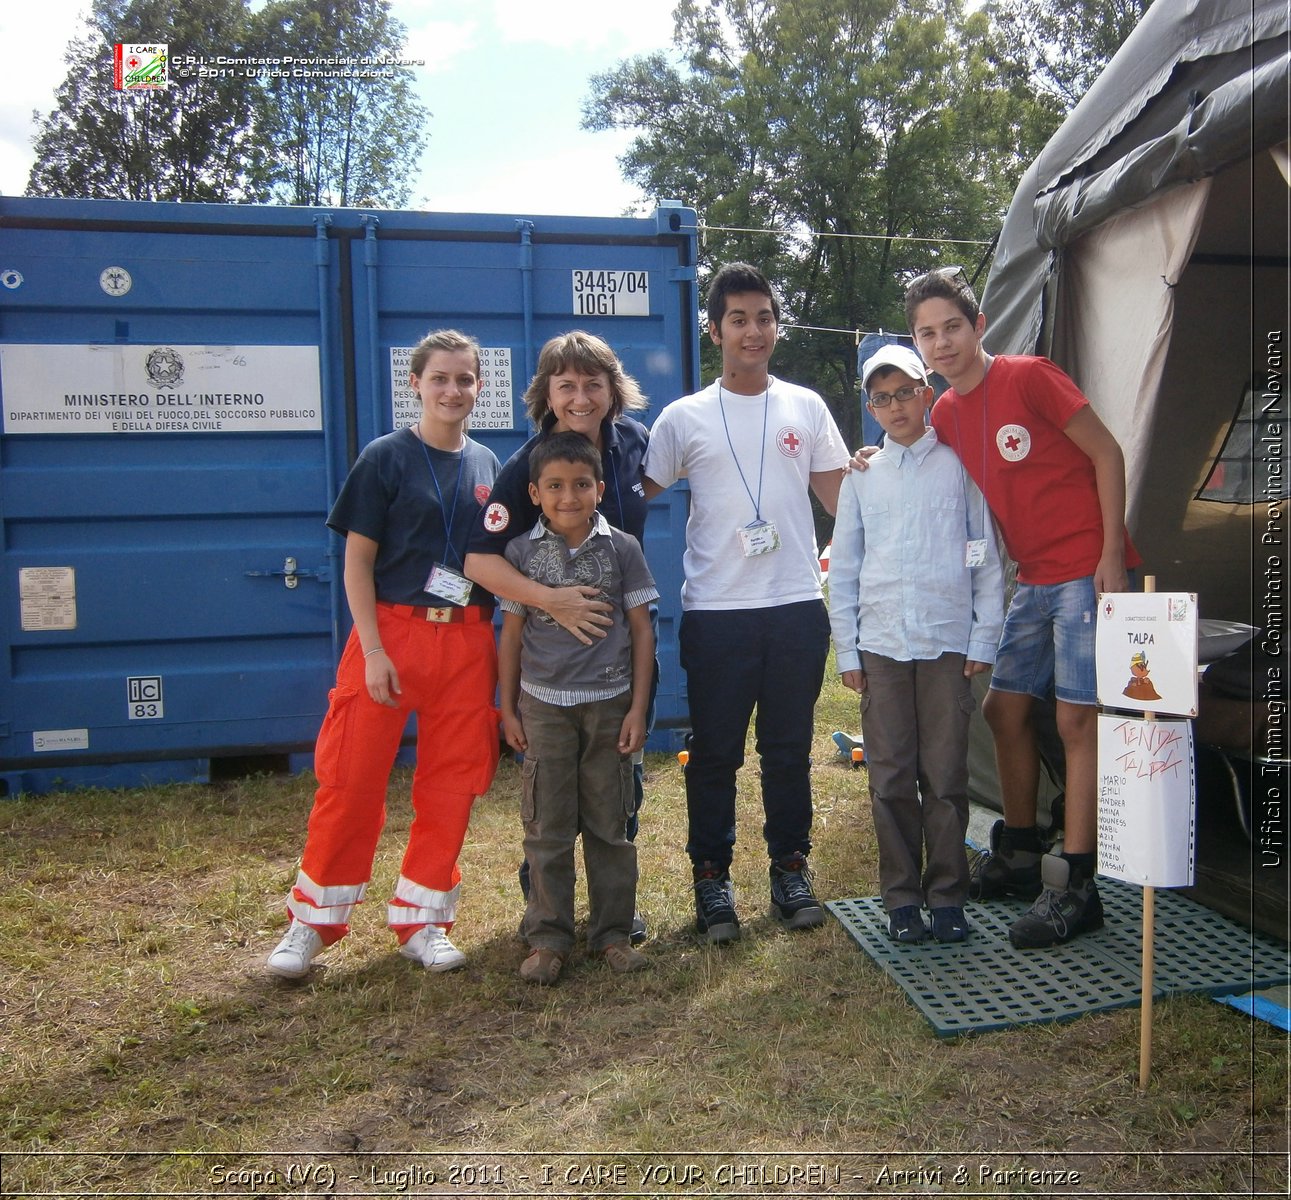 Scopa (VC) - Luglio 2011 - I CARE YOUR CHILDREN - Arrivi & Partenze -  Croce Rossa Italiana - Ufficio Immagine Comitato Provinciale Novara